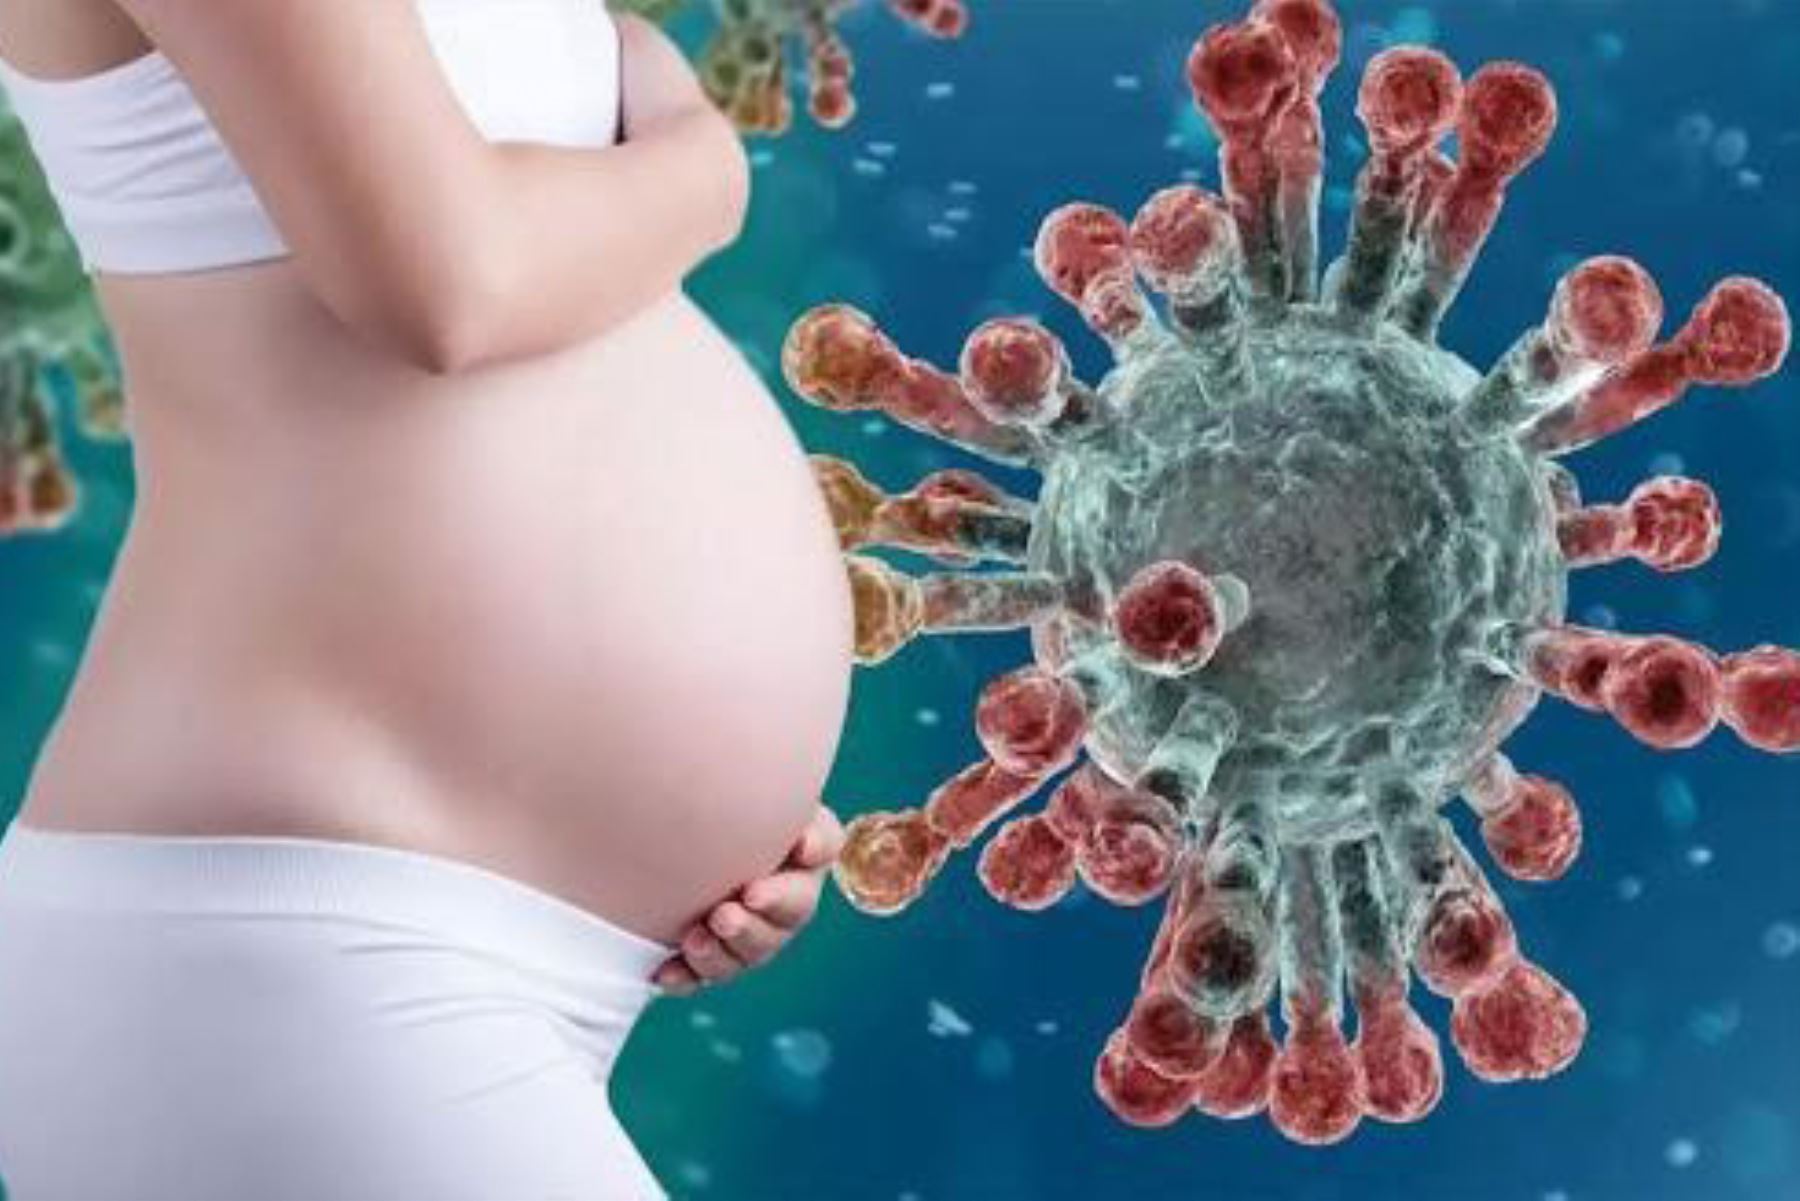 De acuerdo con los últimos reportes, se observan más cambios inflamatorios en mujeres embarazadas contagiadas por el virus de la covid-19.